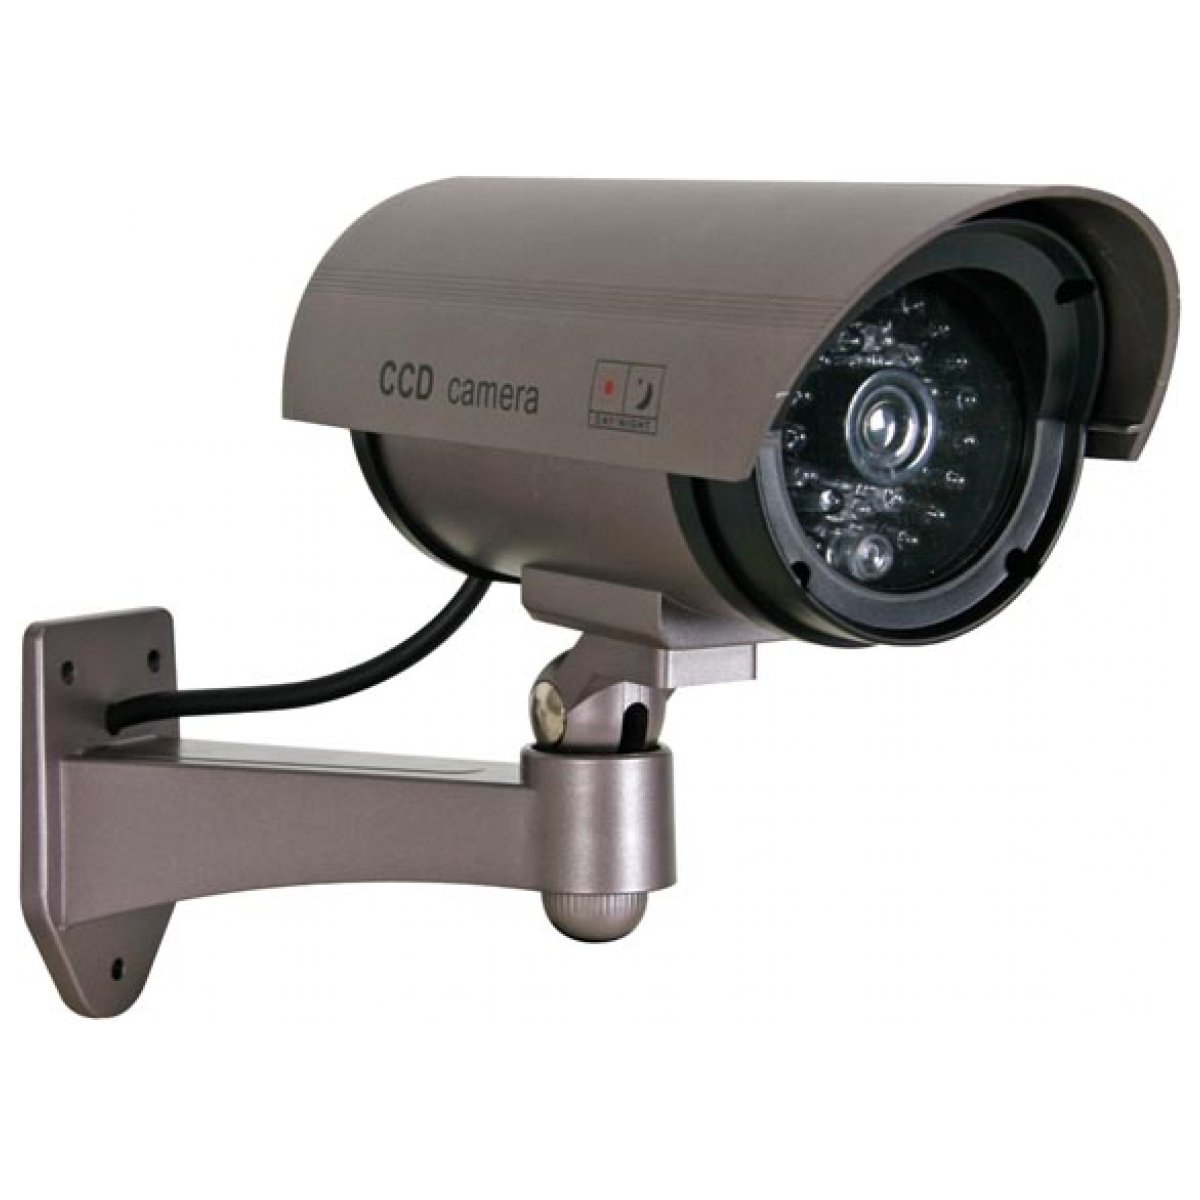 Уличная камера с выводом на телефон. Камера видеонаблюдения Spymax SCB-7361fr Light. Видеокамера DINIONXF 0495/51 LTC дневного/ночного наблюдения с ПЗС формата 1/3". Камера видеонаблюдения Falcone Eye ip66 наружная. Камера CCD 575ir kc3.